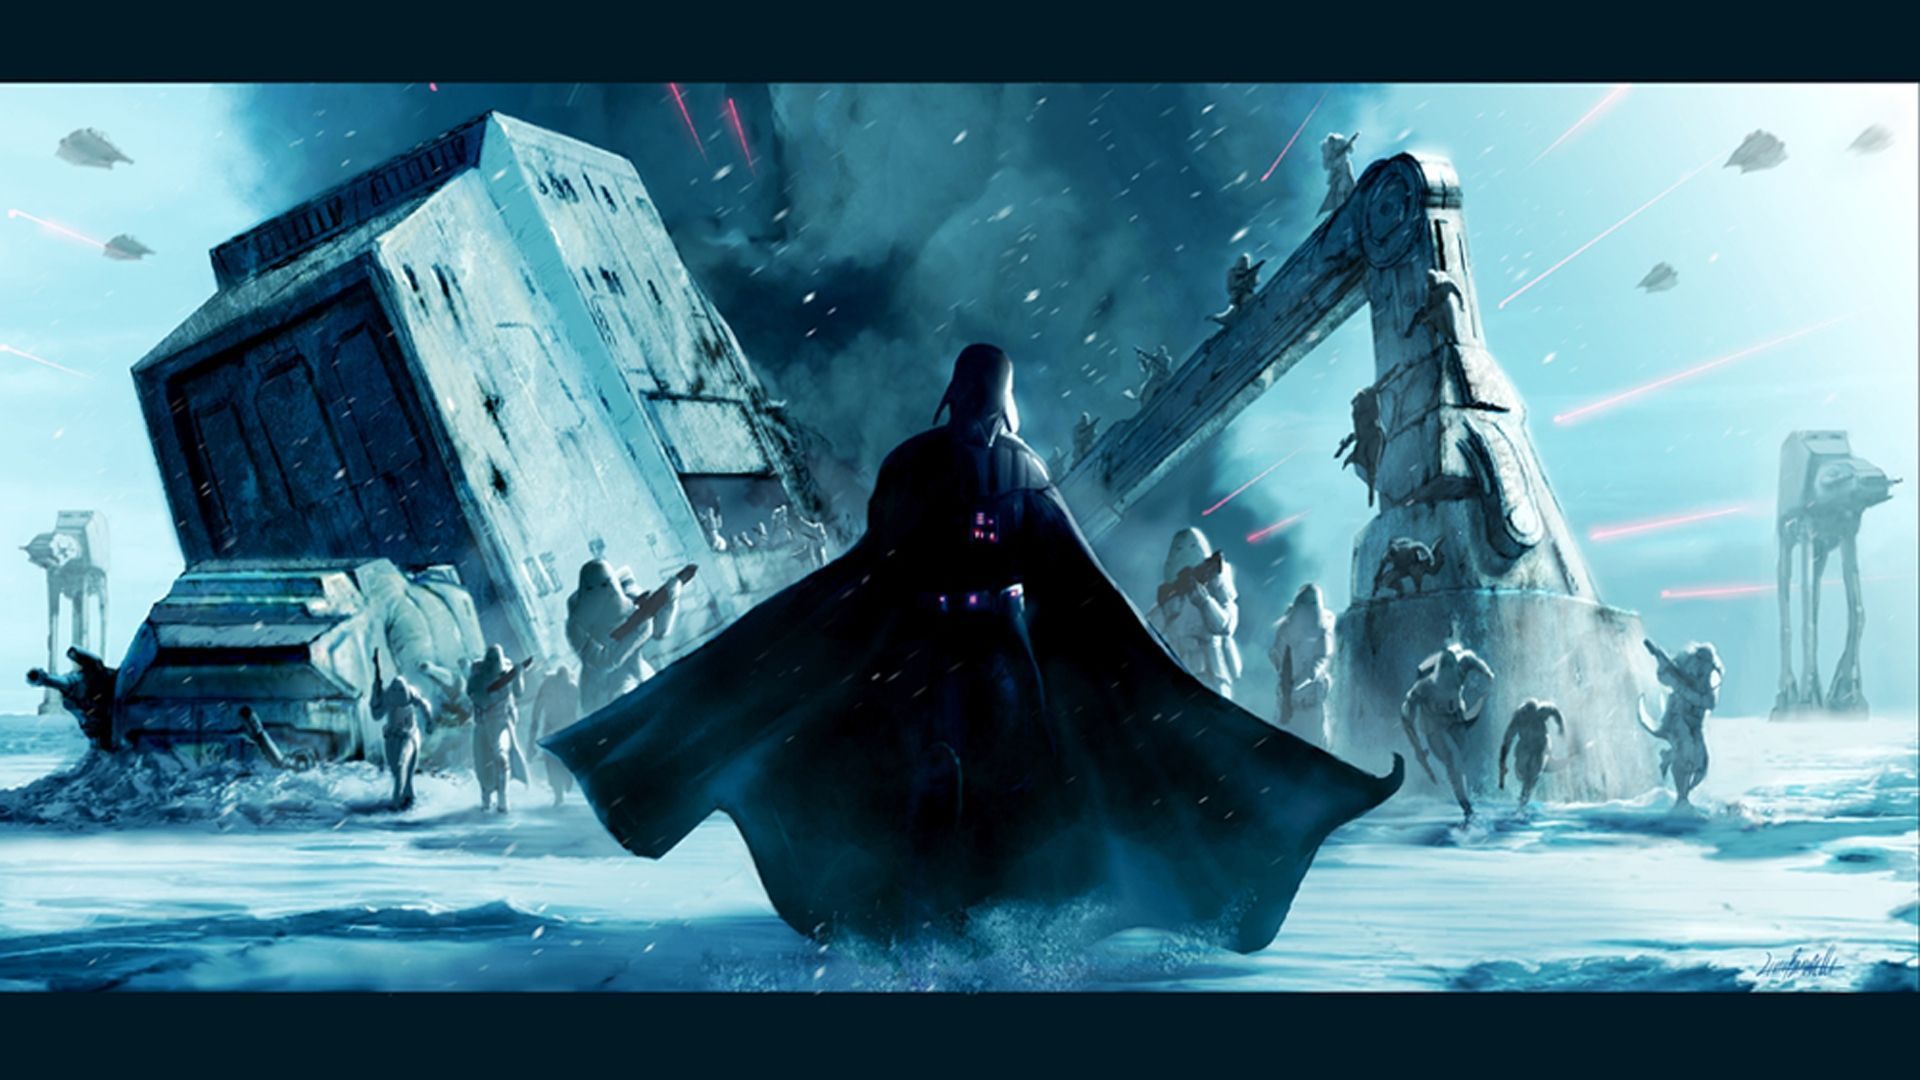 Star Wars movie wallpaper in HD Vader